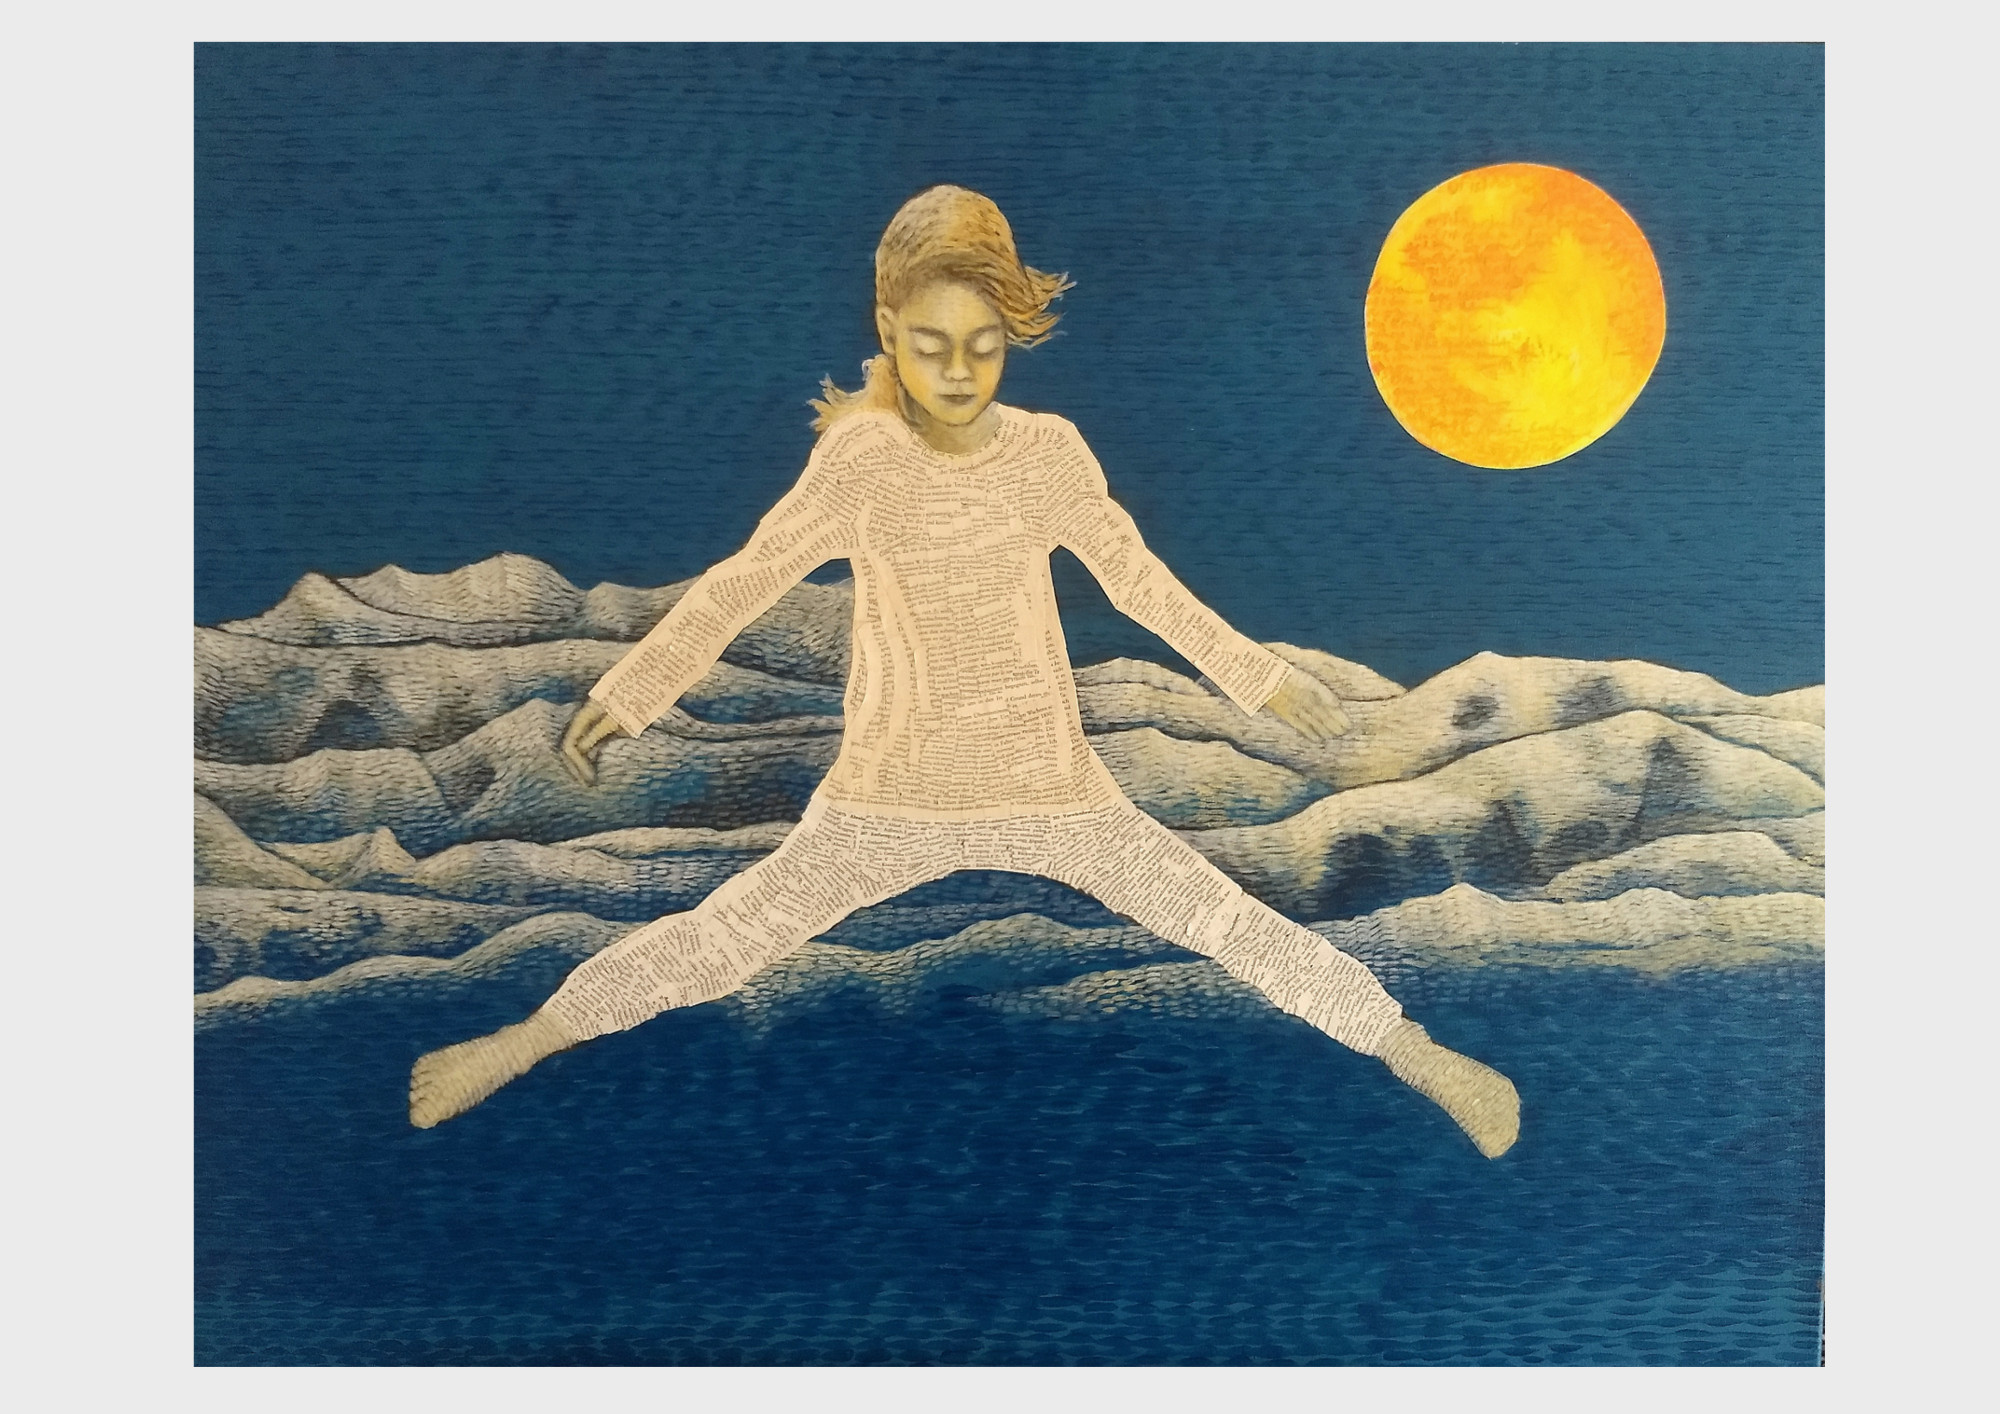 Kunst aus alten Büchern. Blaues Acrylbild mit Collage Elementen aus alten, zerliebten Büchern. Ein Mädchen gleitet über dem Gebirge durch den blauen Himmel und träumt von einem Buch: Peter Pan.